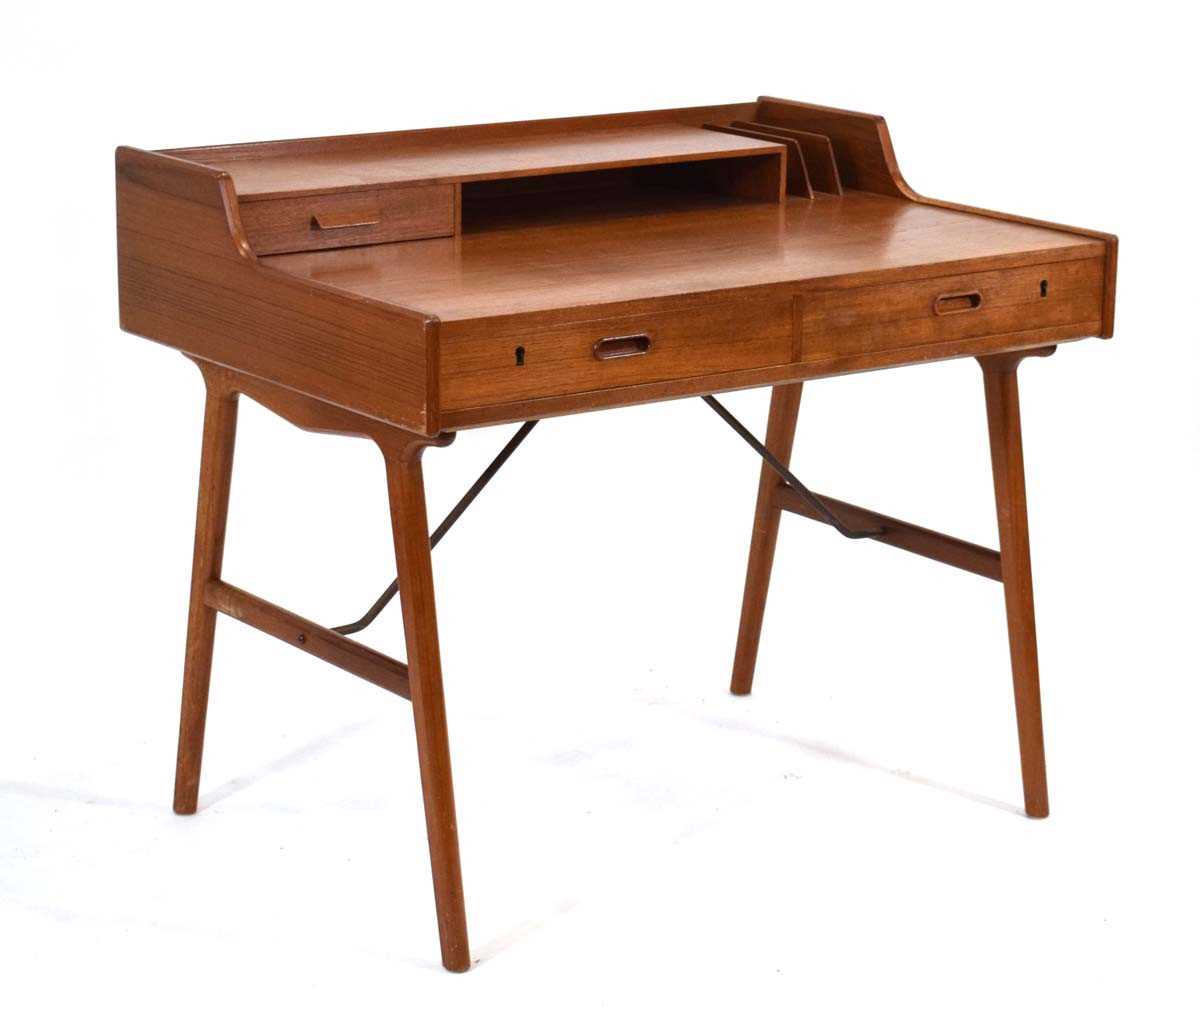 Arne Wahl Iversen for Vinde Mobelfabrik, a 1950/60's Danish teak desk, Model 56, the - Image 4 of 18